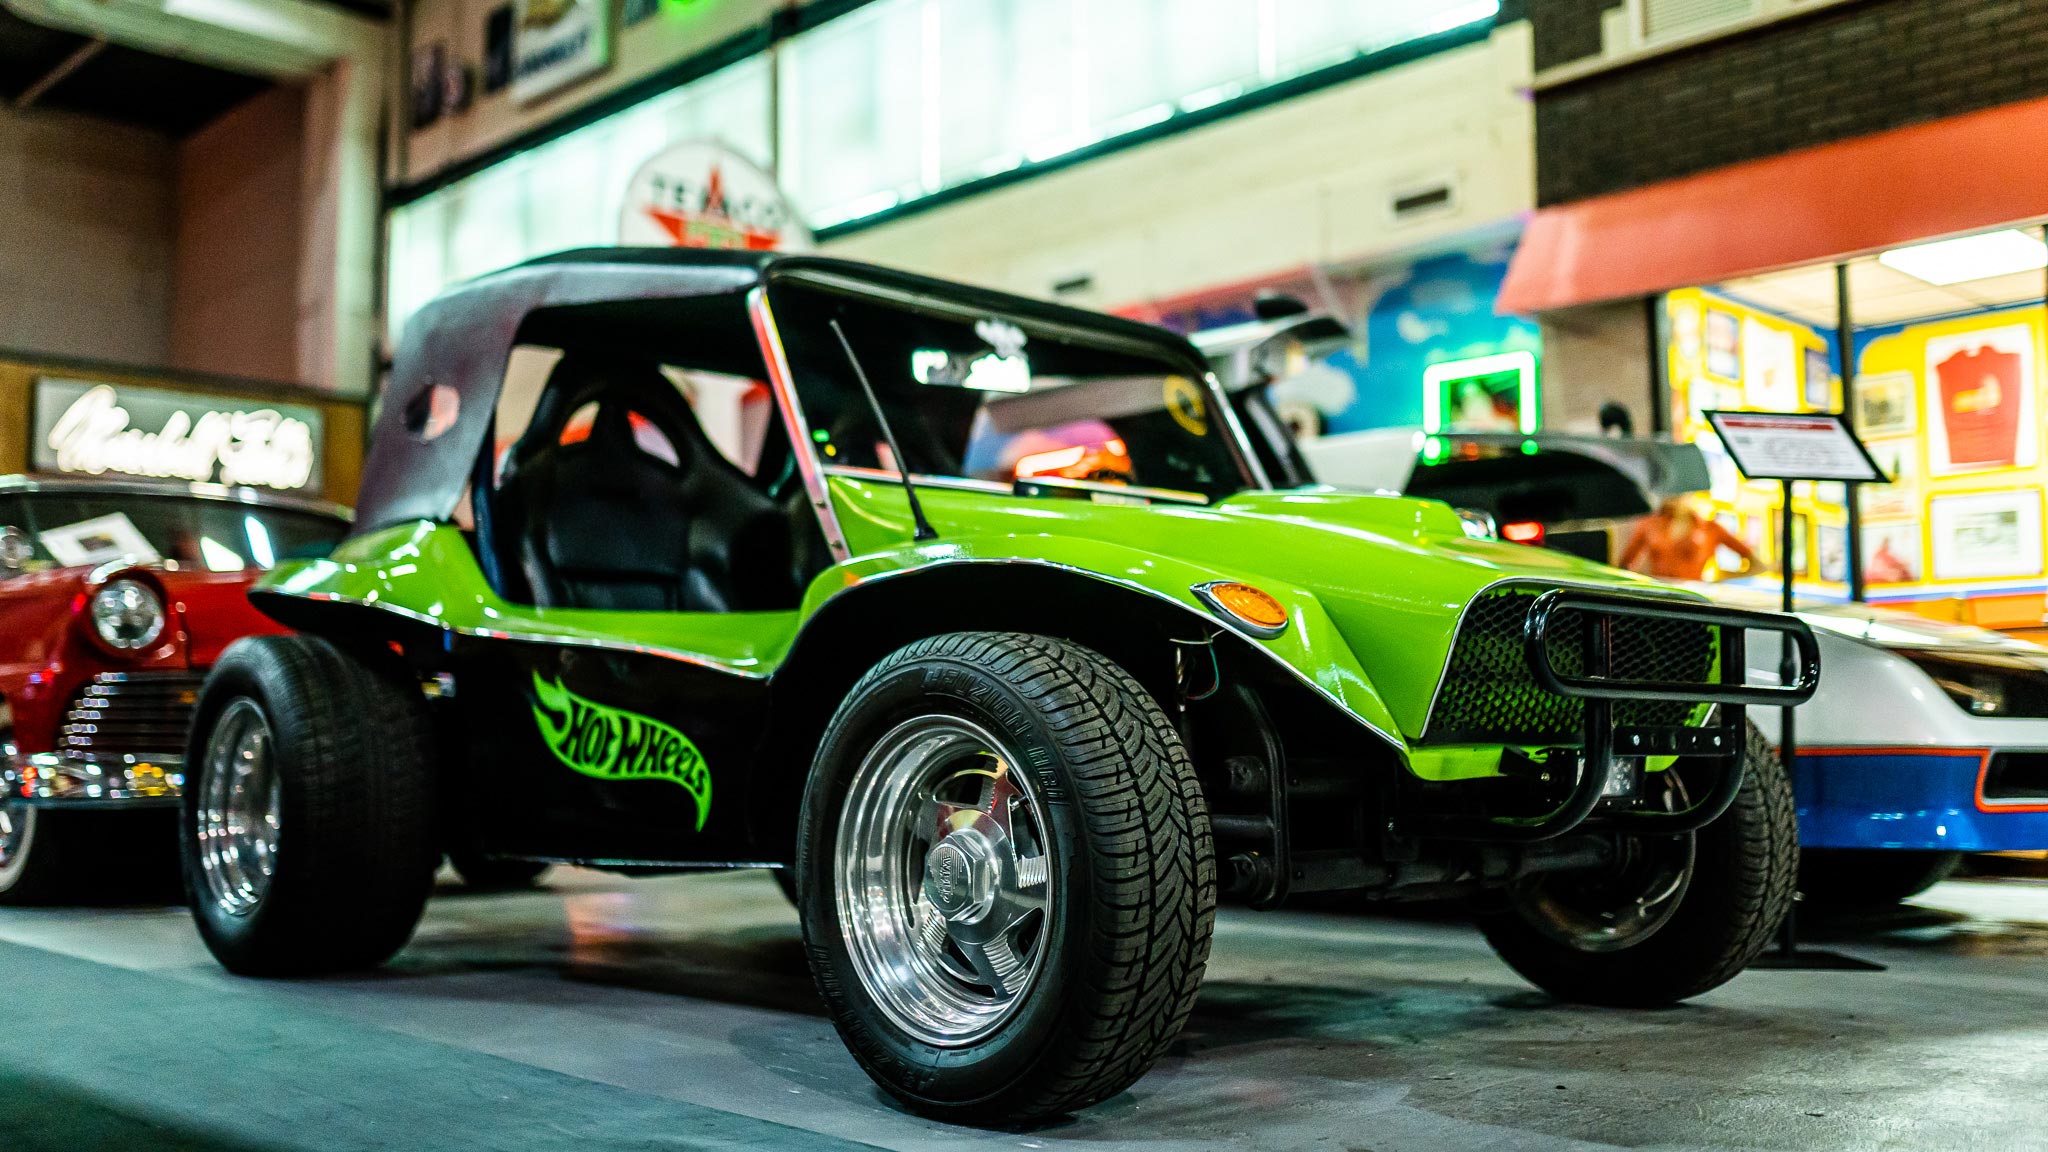 Green Hot Wheels Car at Retro Rides Experience at Navy Pier